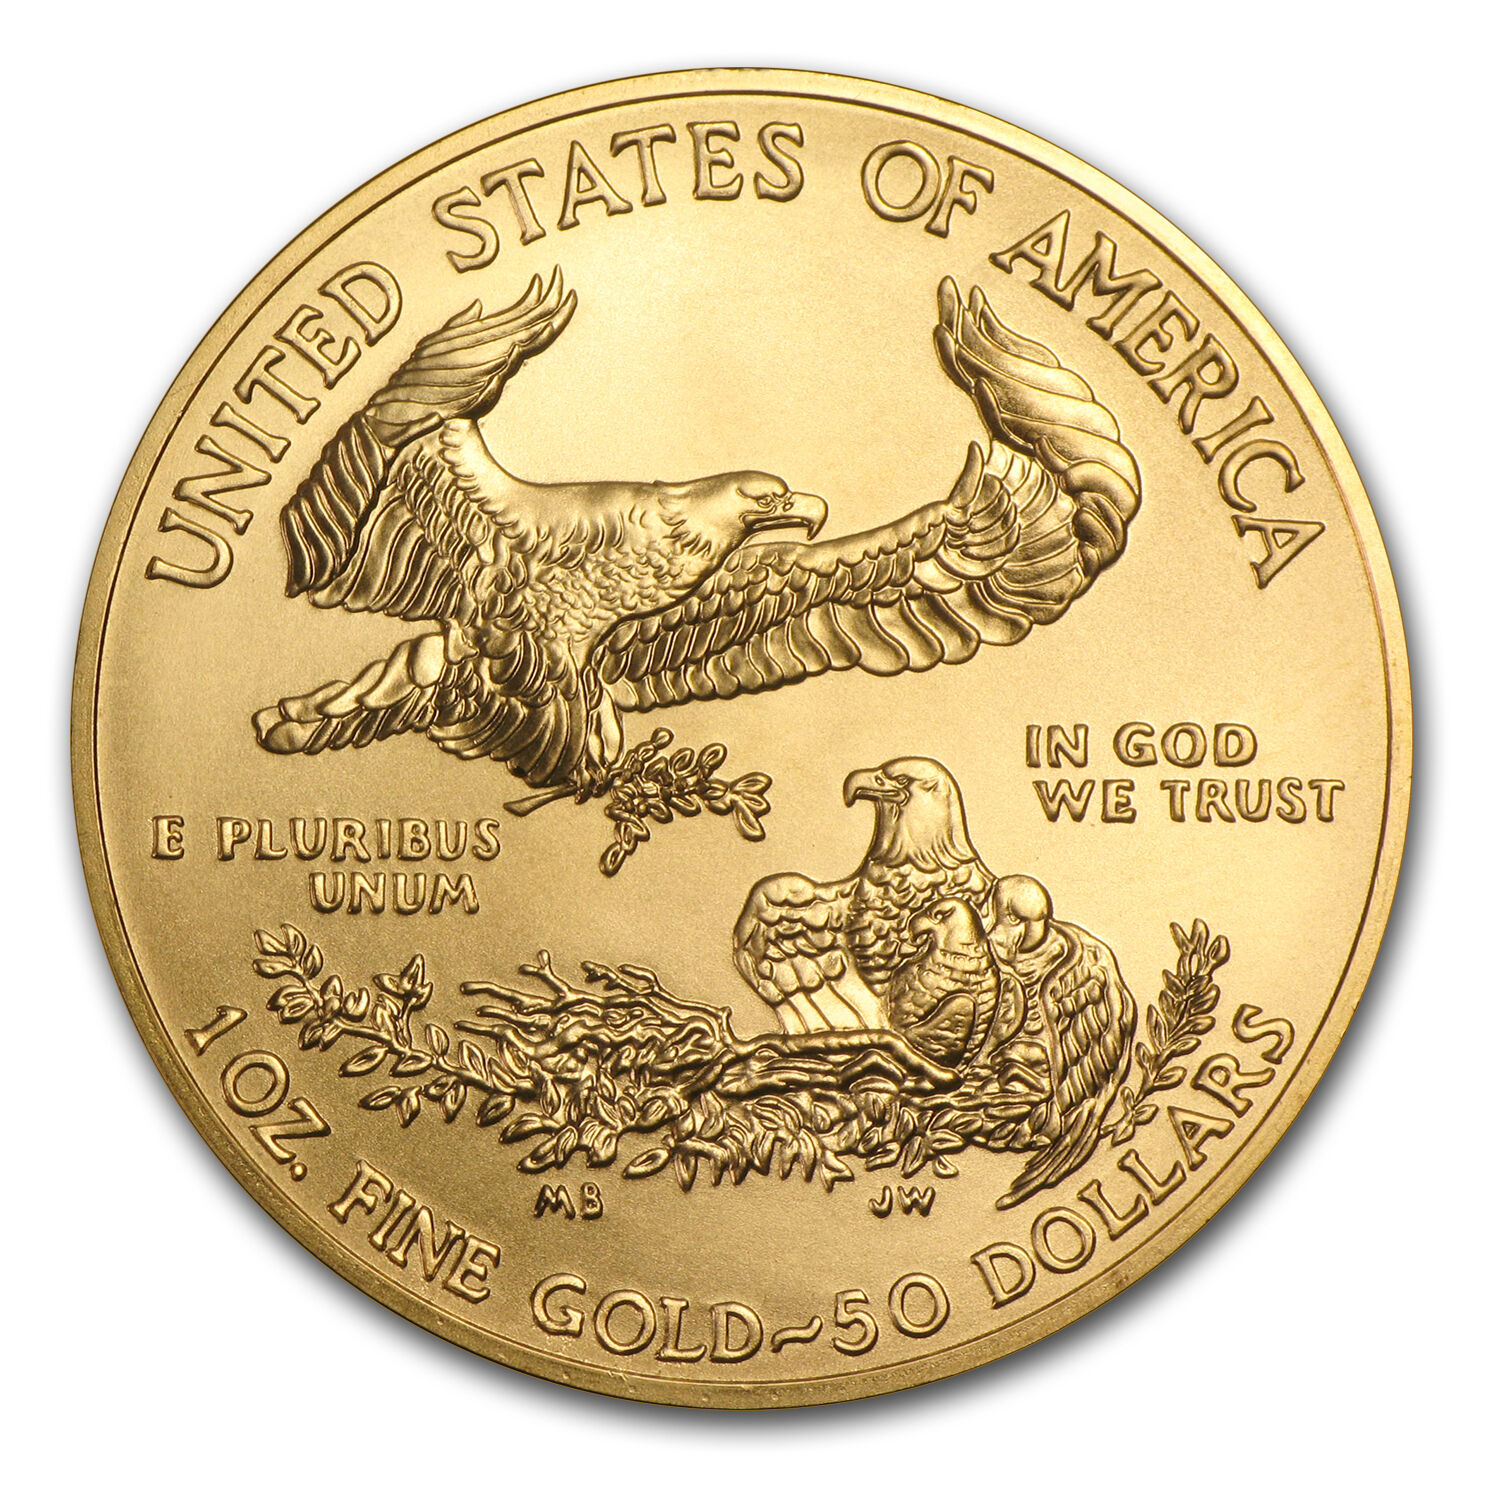 2017 1 oz Gold American Eagle Coin BU - SKU #117271 US Mint 117271 - фотография #2